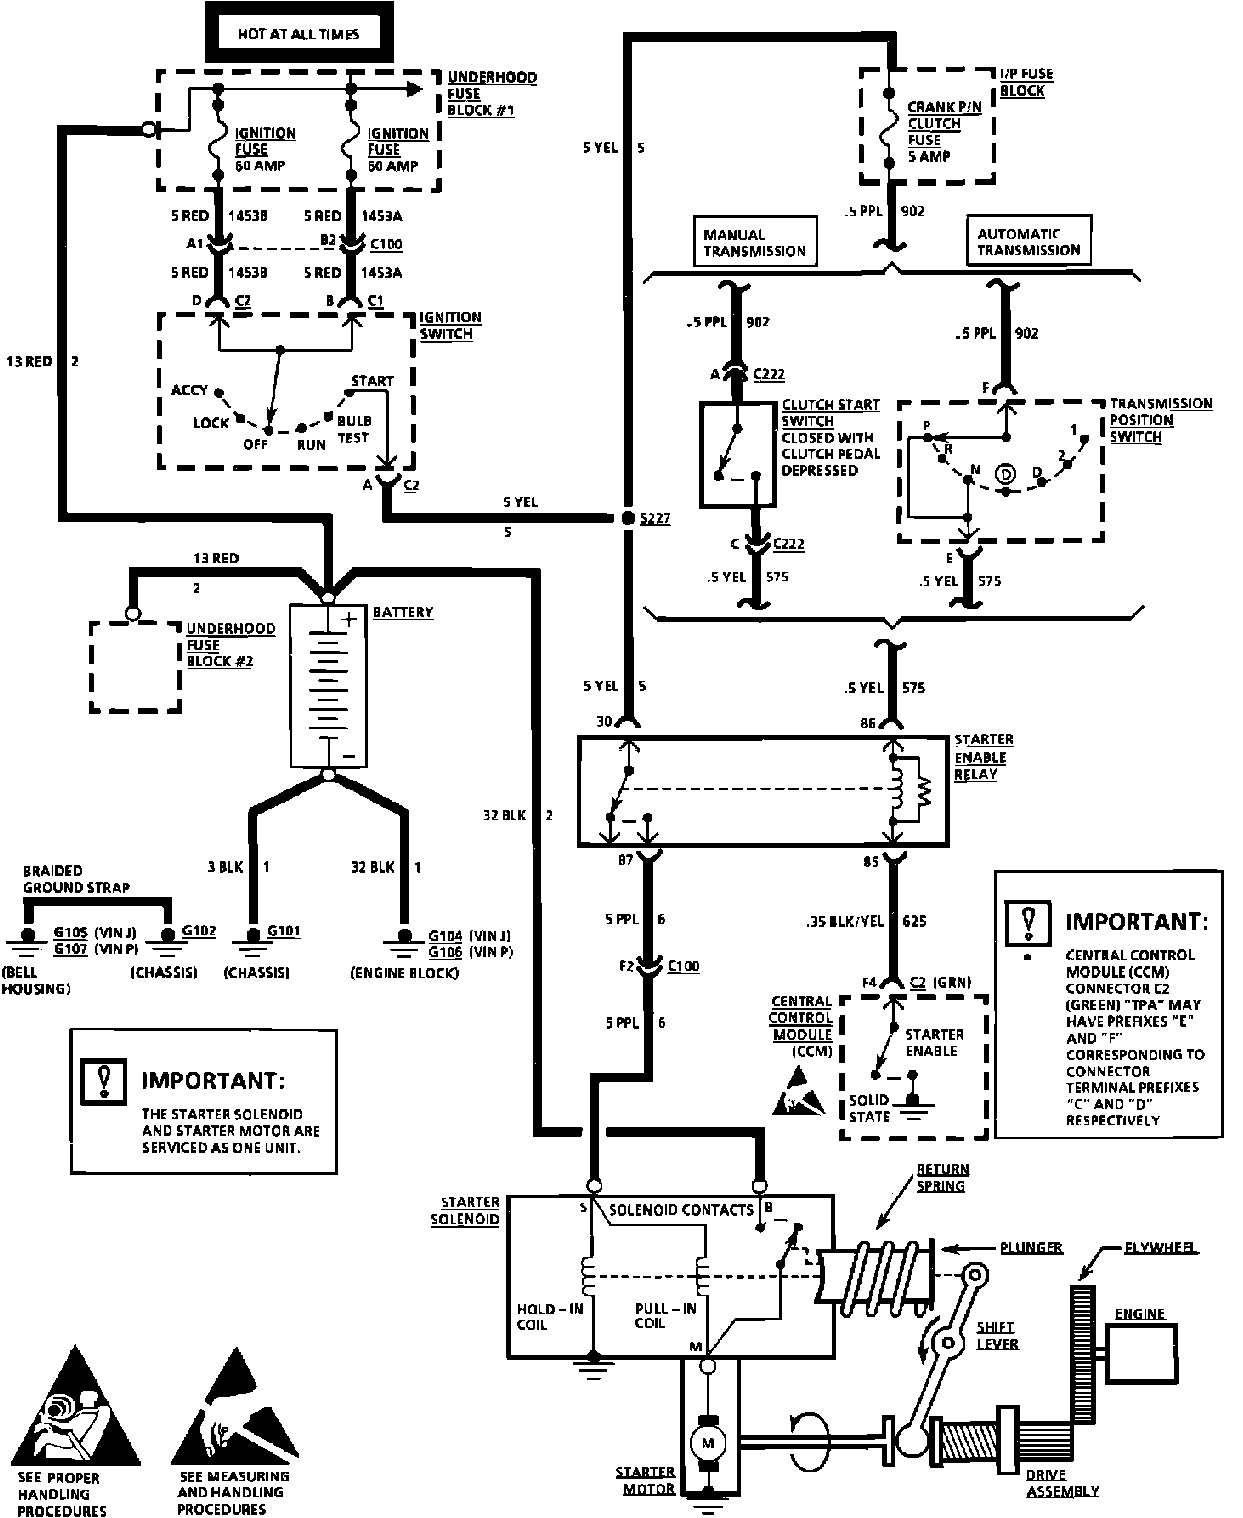 Electric Starter Wiring Diagram